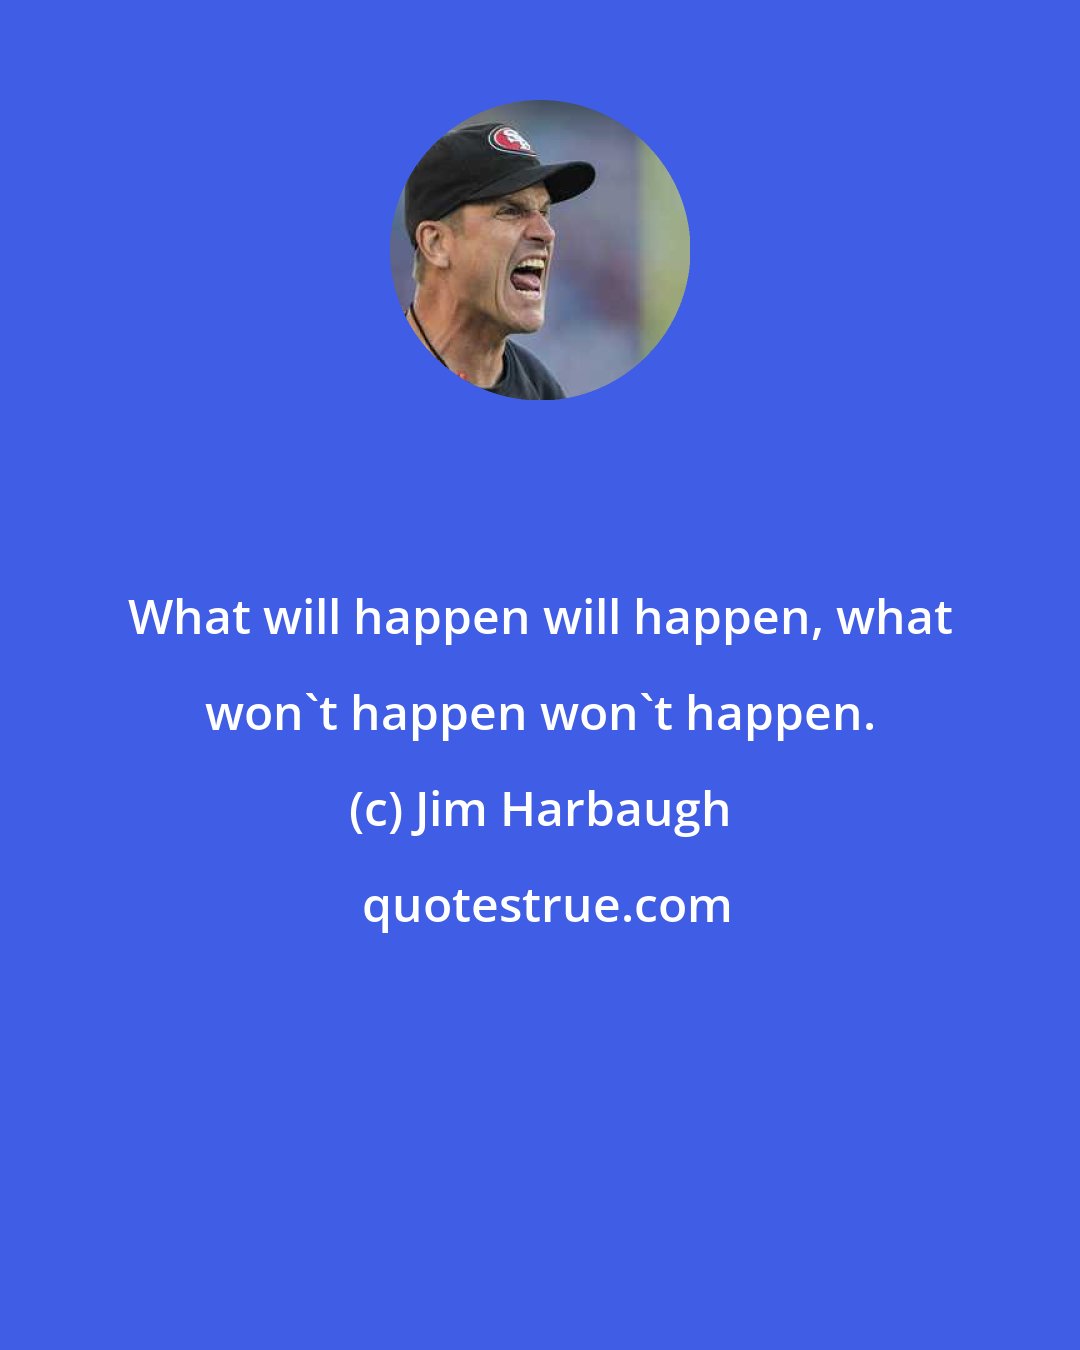 Jim Harbaugh: What will happen will happen, what won't happen won't happen.